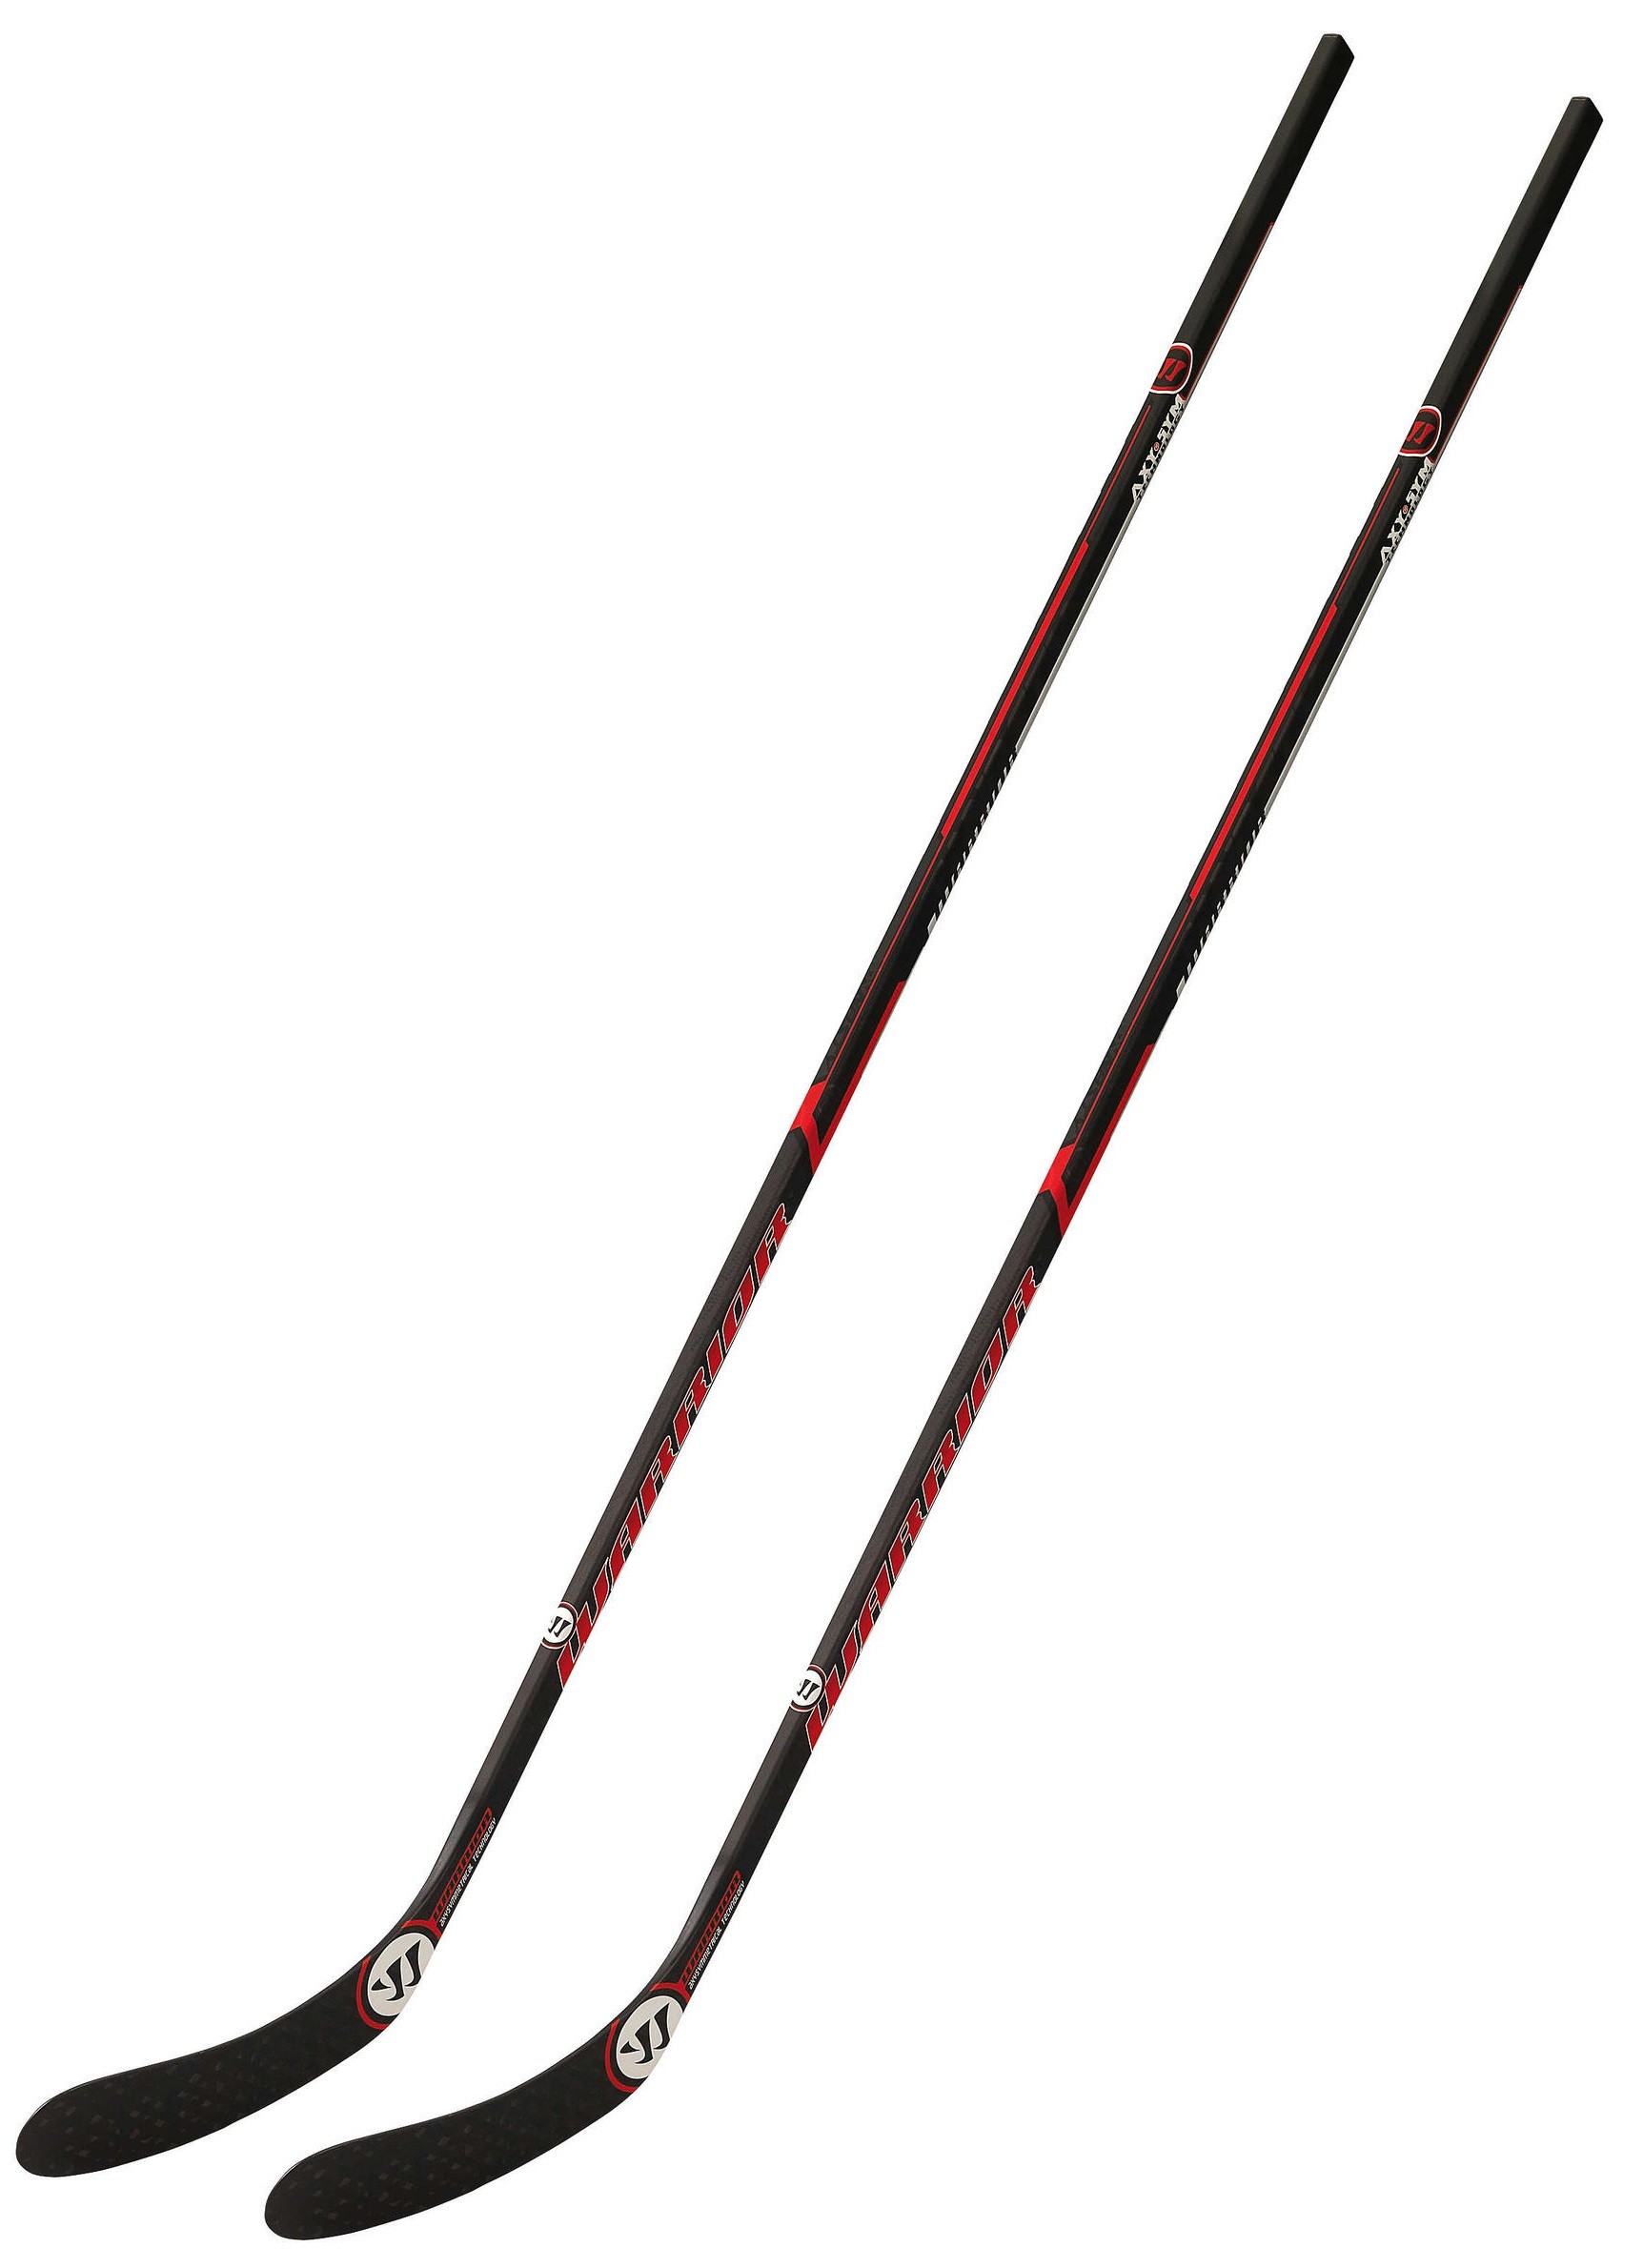 2 Pack WARRIOR Dynasty Red Ice Hockey Sticks Senior Flex